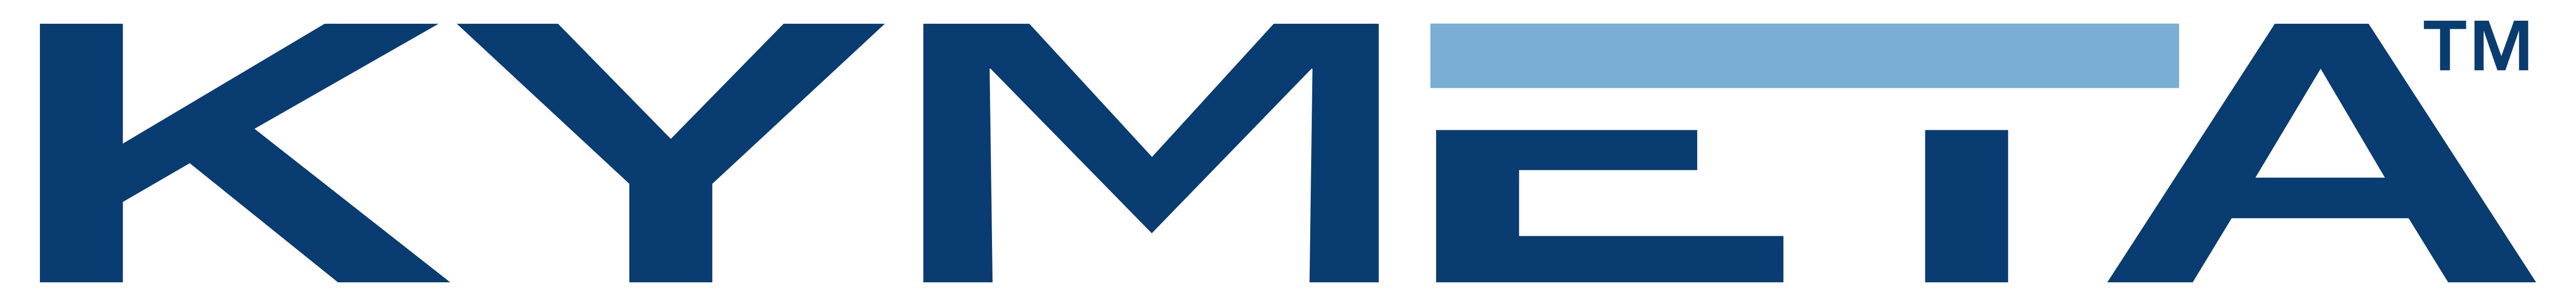 Kymeta Logo